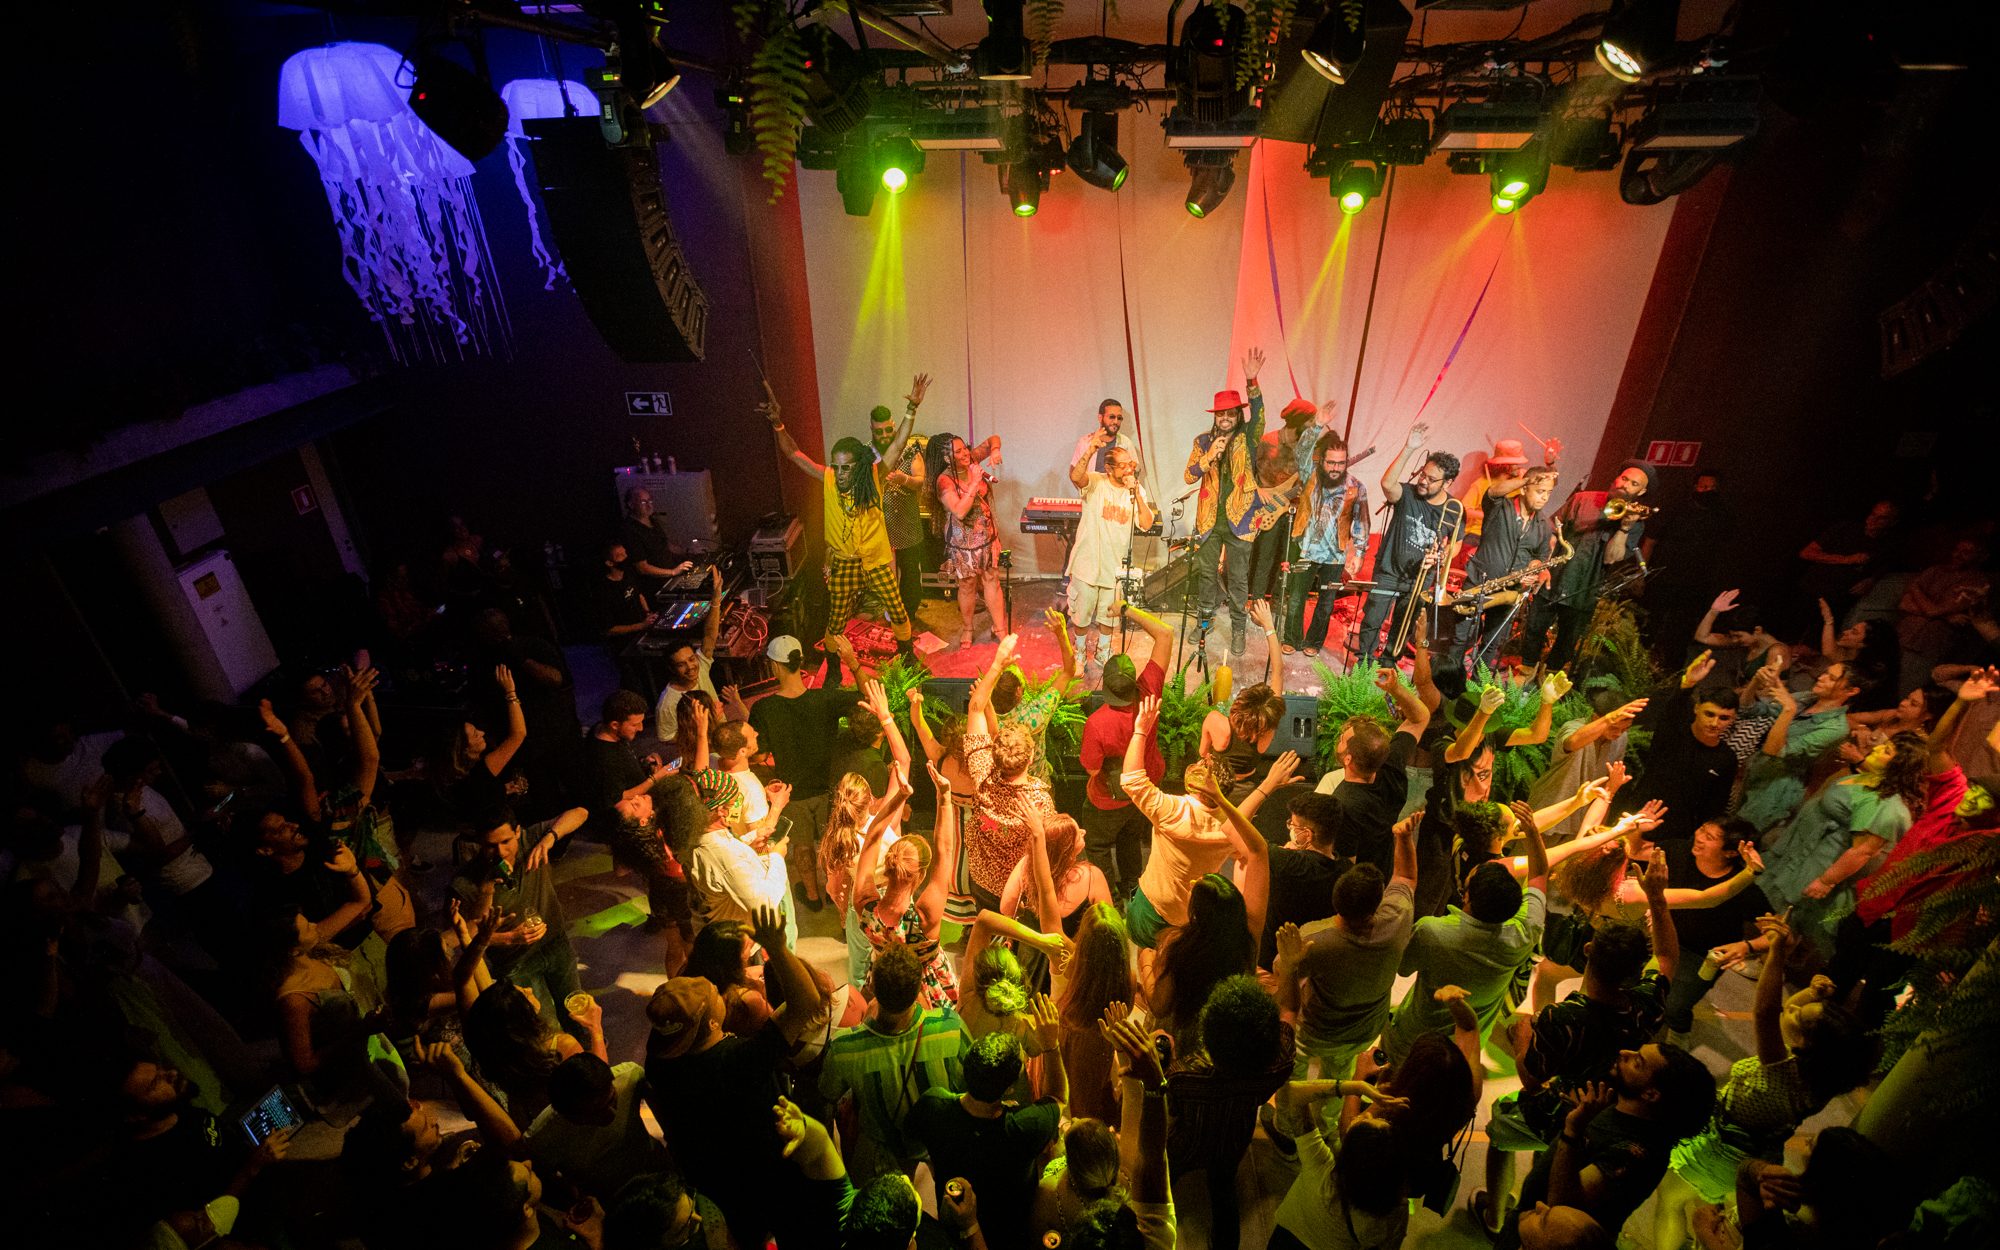 Público aproveita festa no CL Music Hall, nova casa de shows em Pinheiros